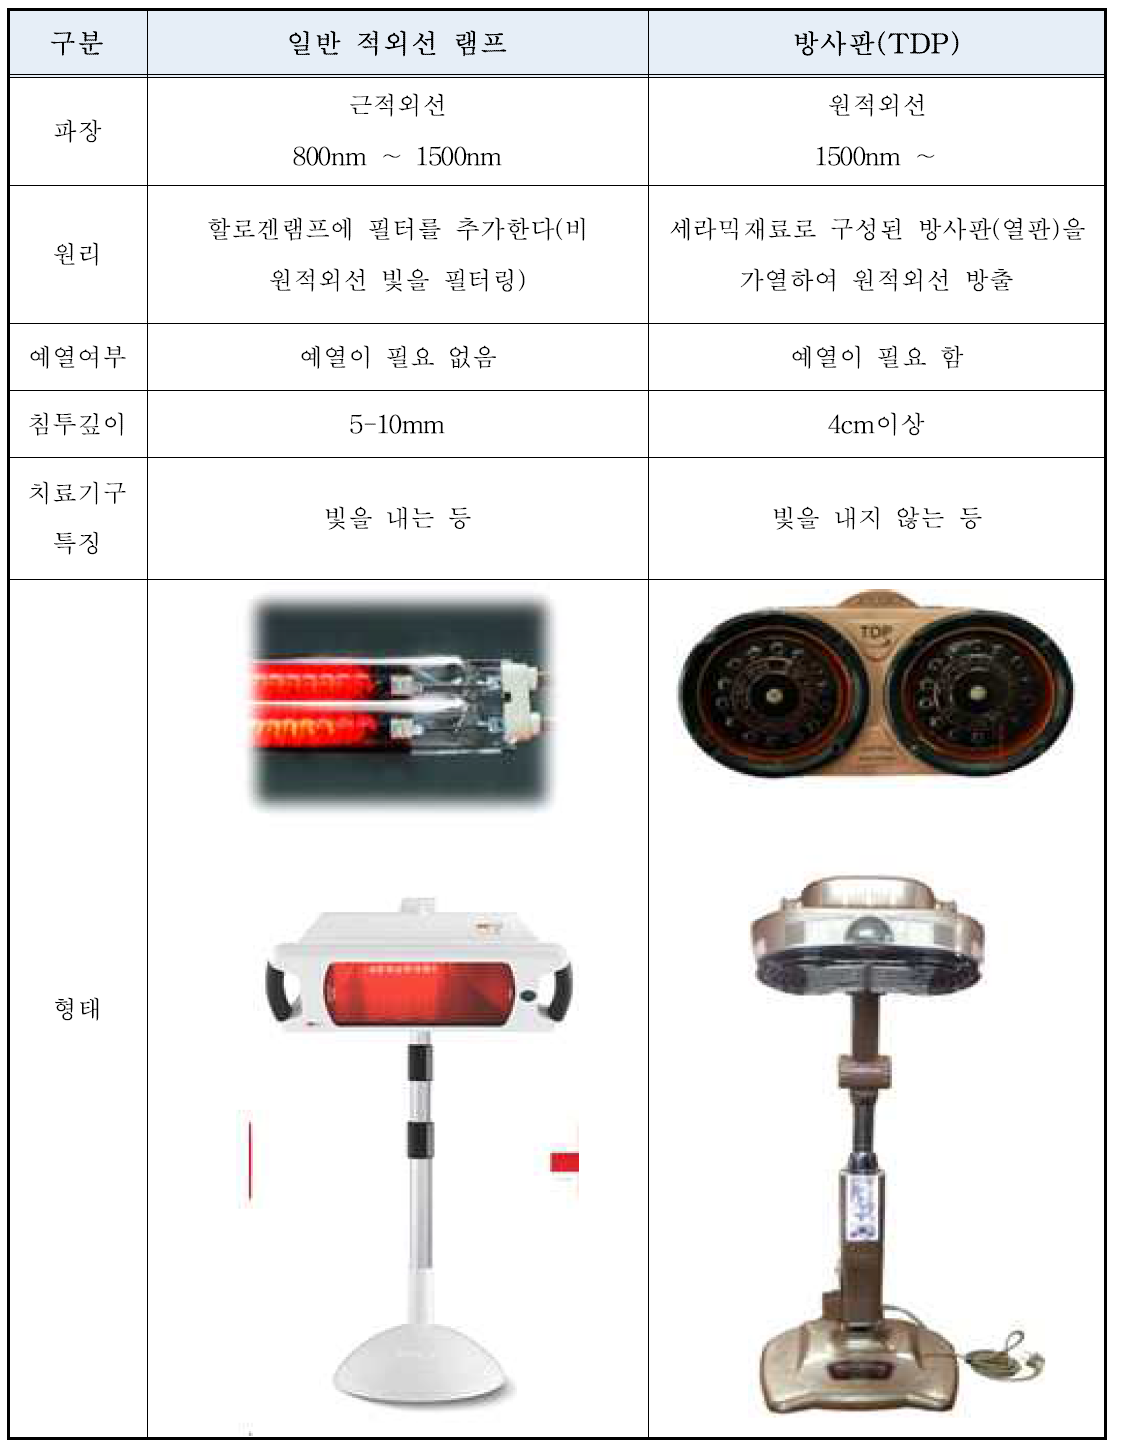 램프형 적외선조사기와 방사판형 적외선조사기의 비교